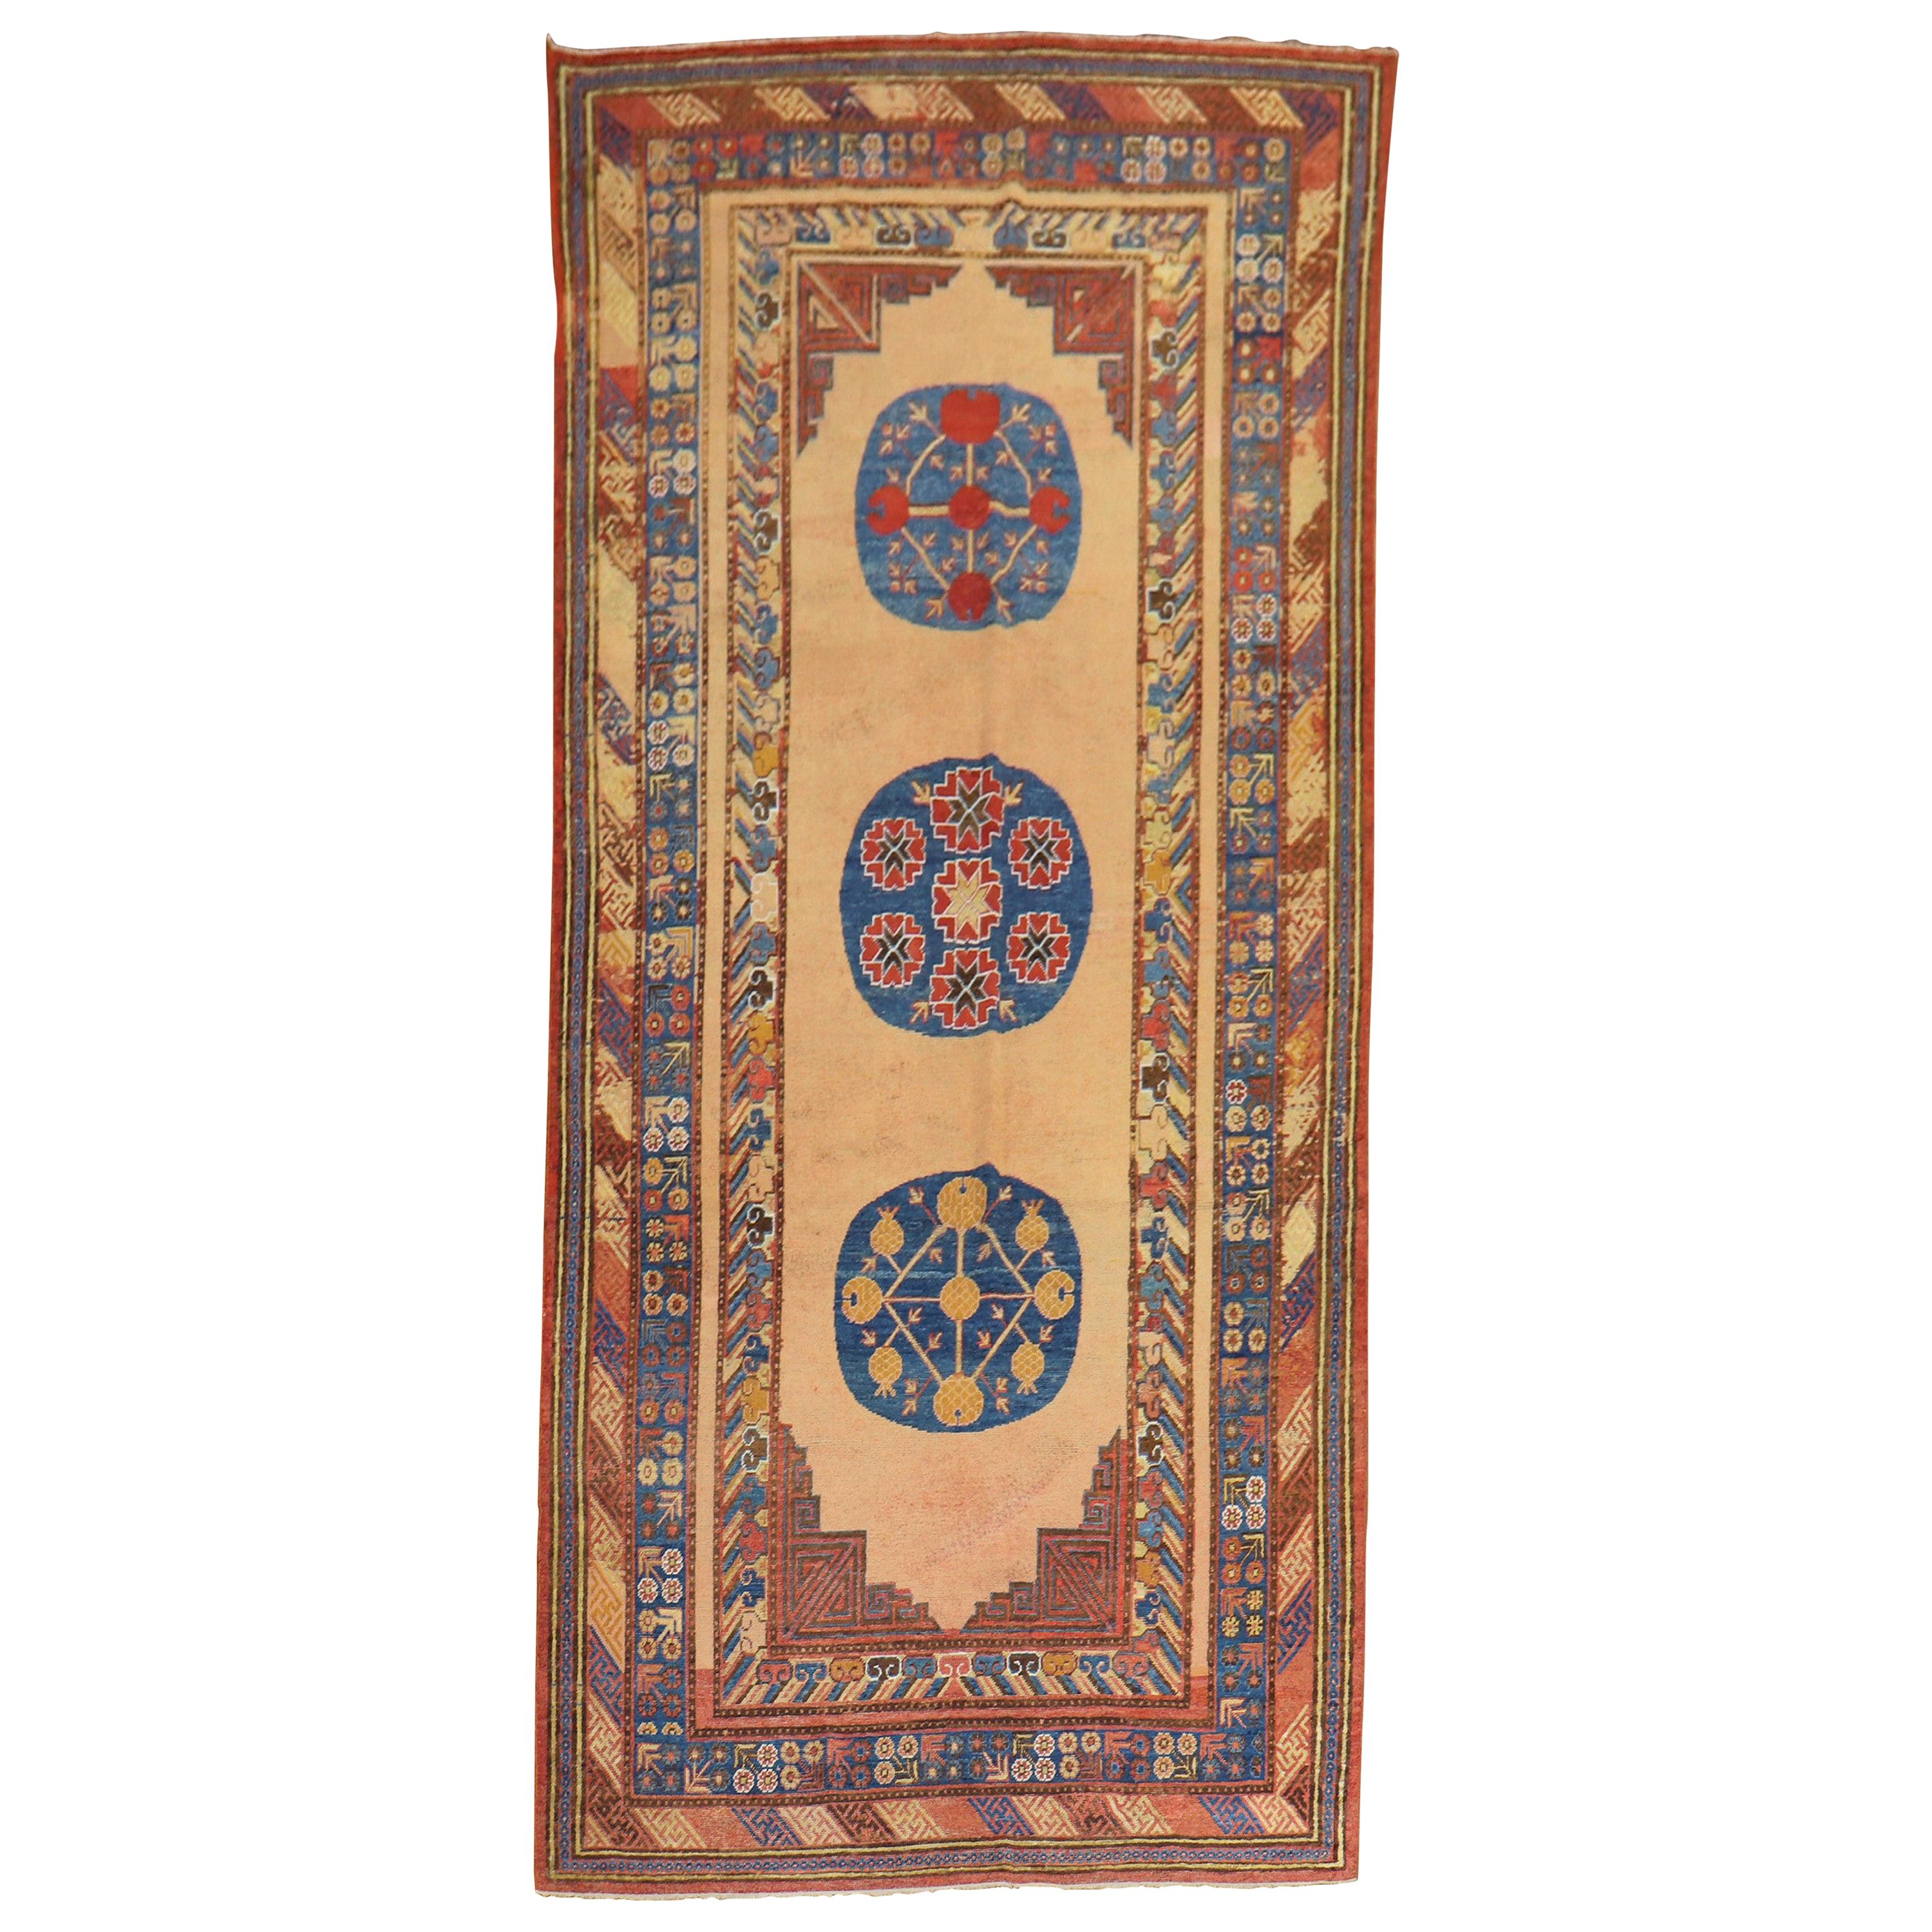 Exquisite 19th Century Antique East Turkestan Khotan Rug